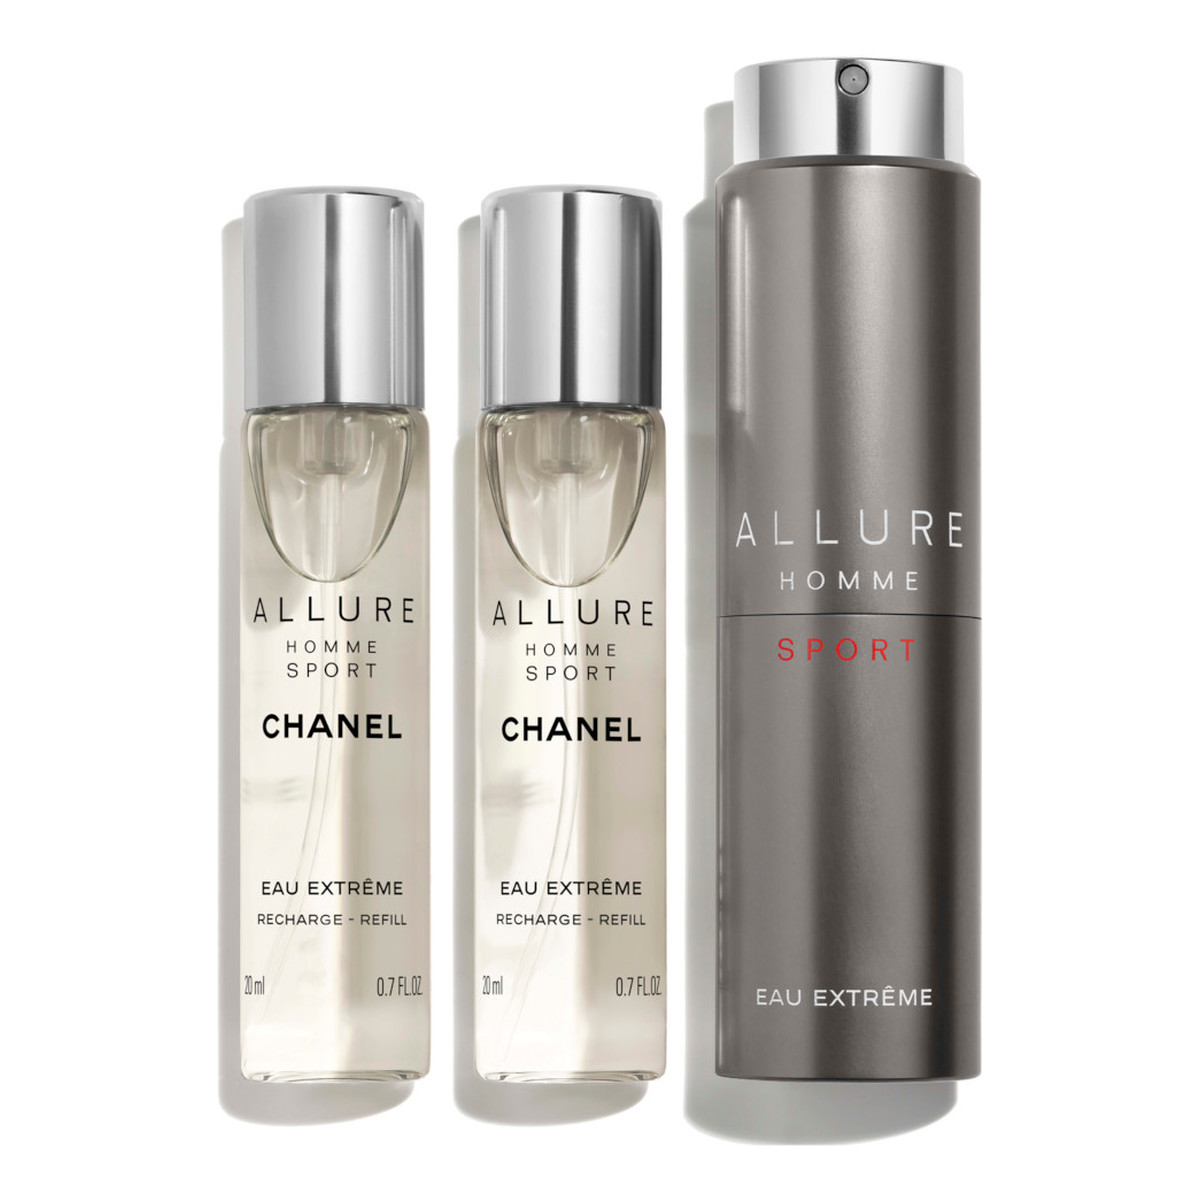 Chanel Allure Homme Sport Eau Extreme woda toaletowa spray z wymiennym wkładem 3x20ml 60ml